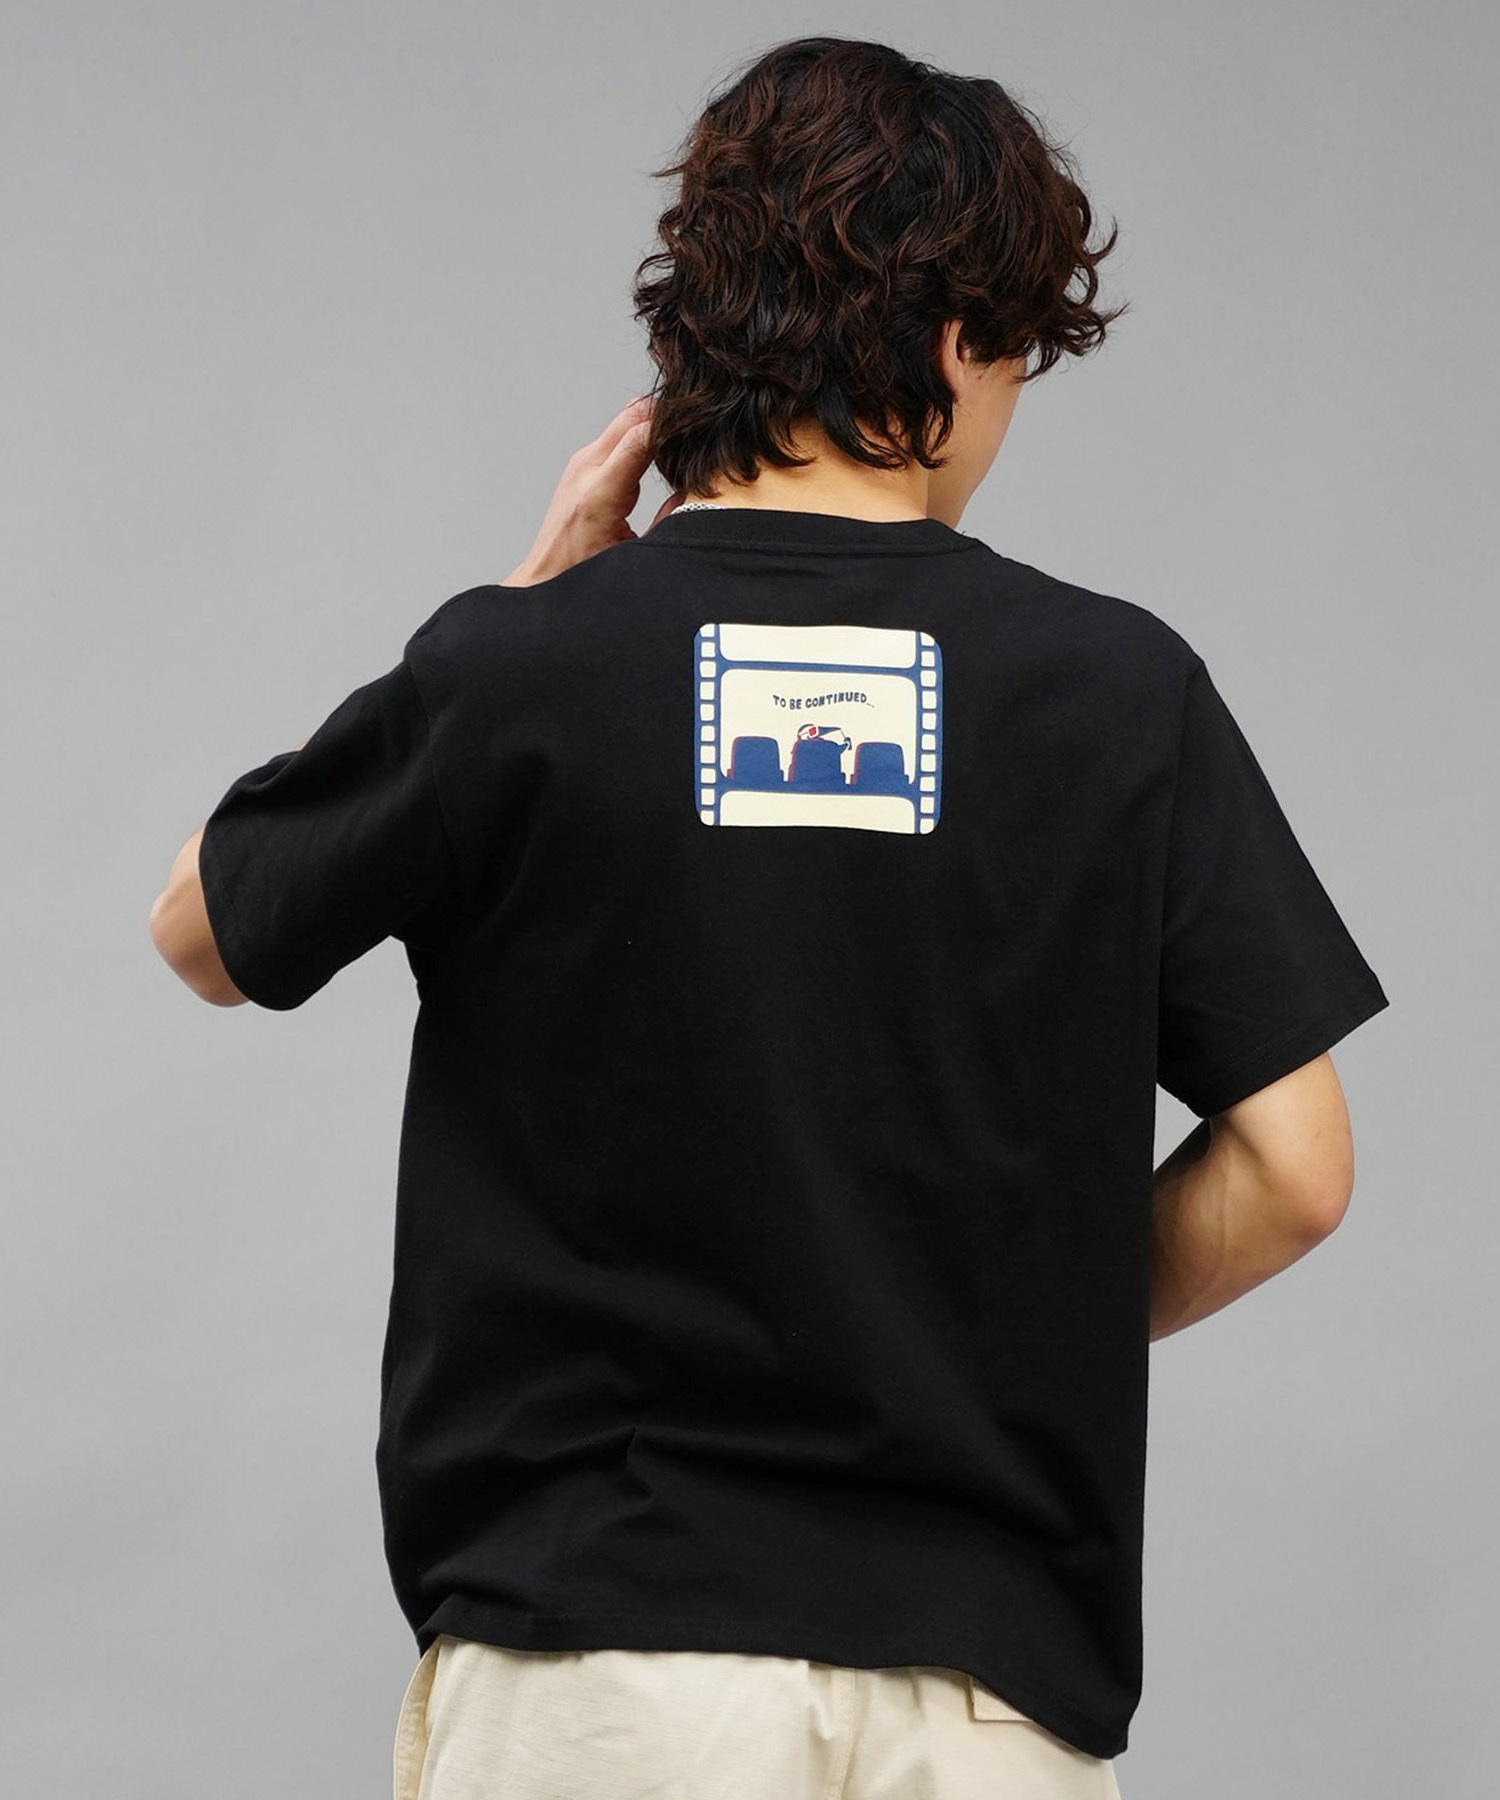 【マトメガイ対象】CHUMS チャムス メンズ Tシャツ 半袖 ブービーバード シアターモチーフ ポップコーン クルーネック CH01-2349(W011-M)